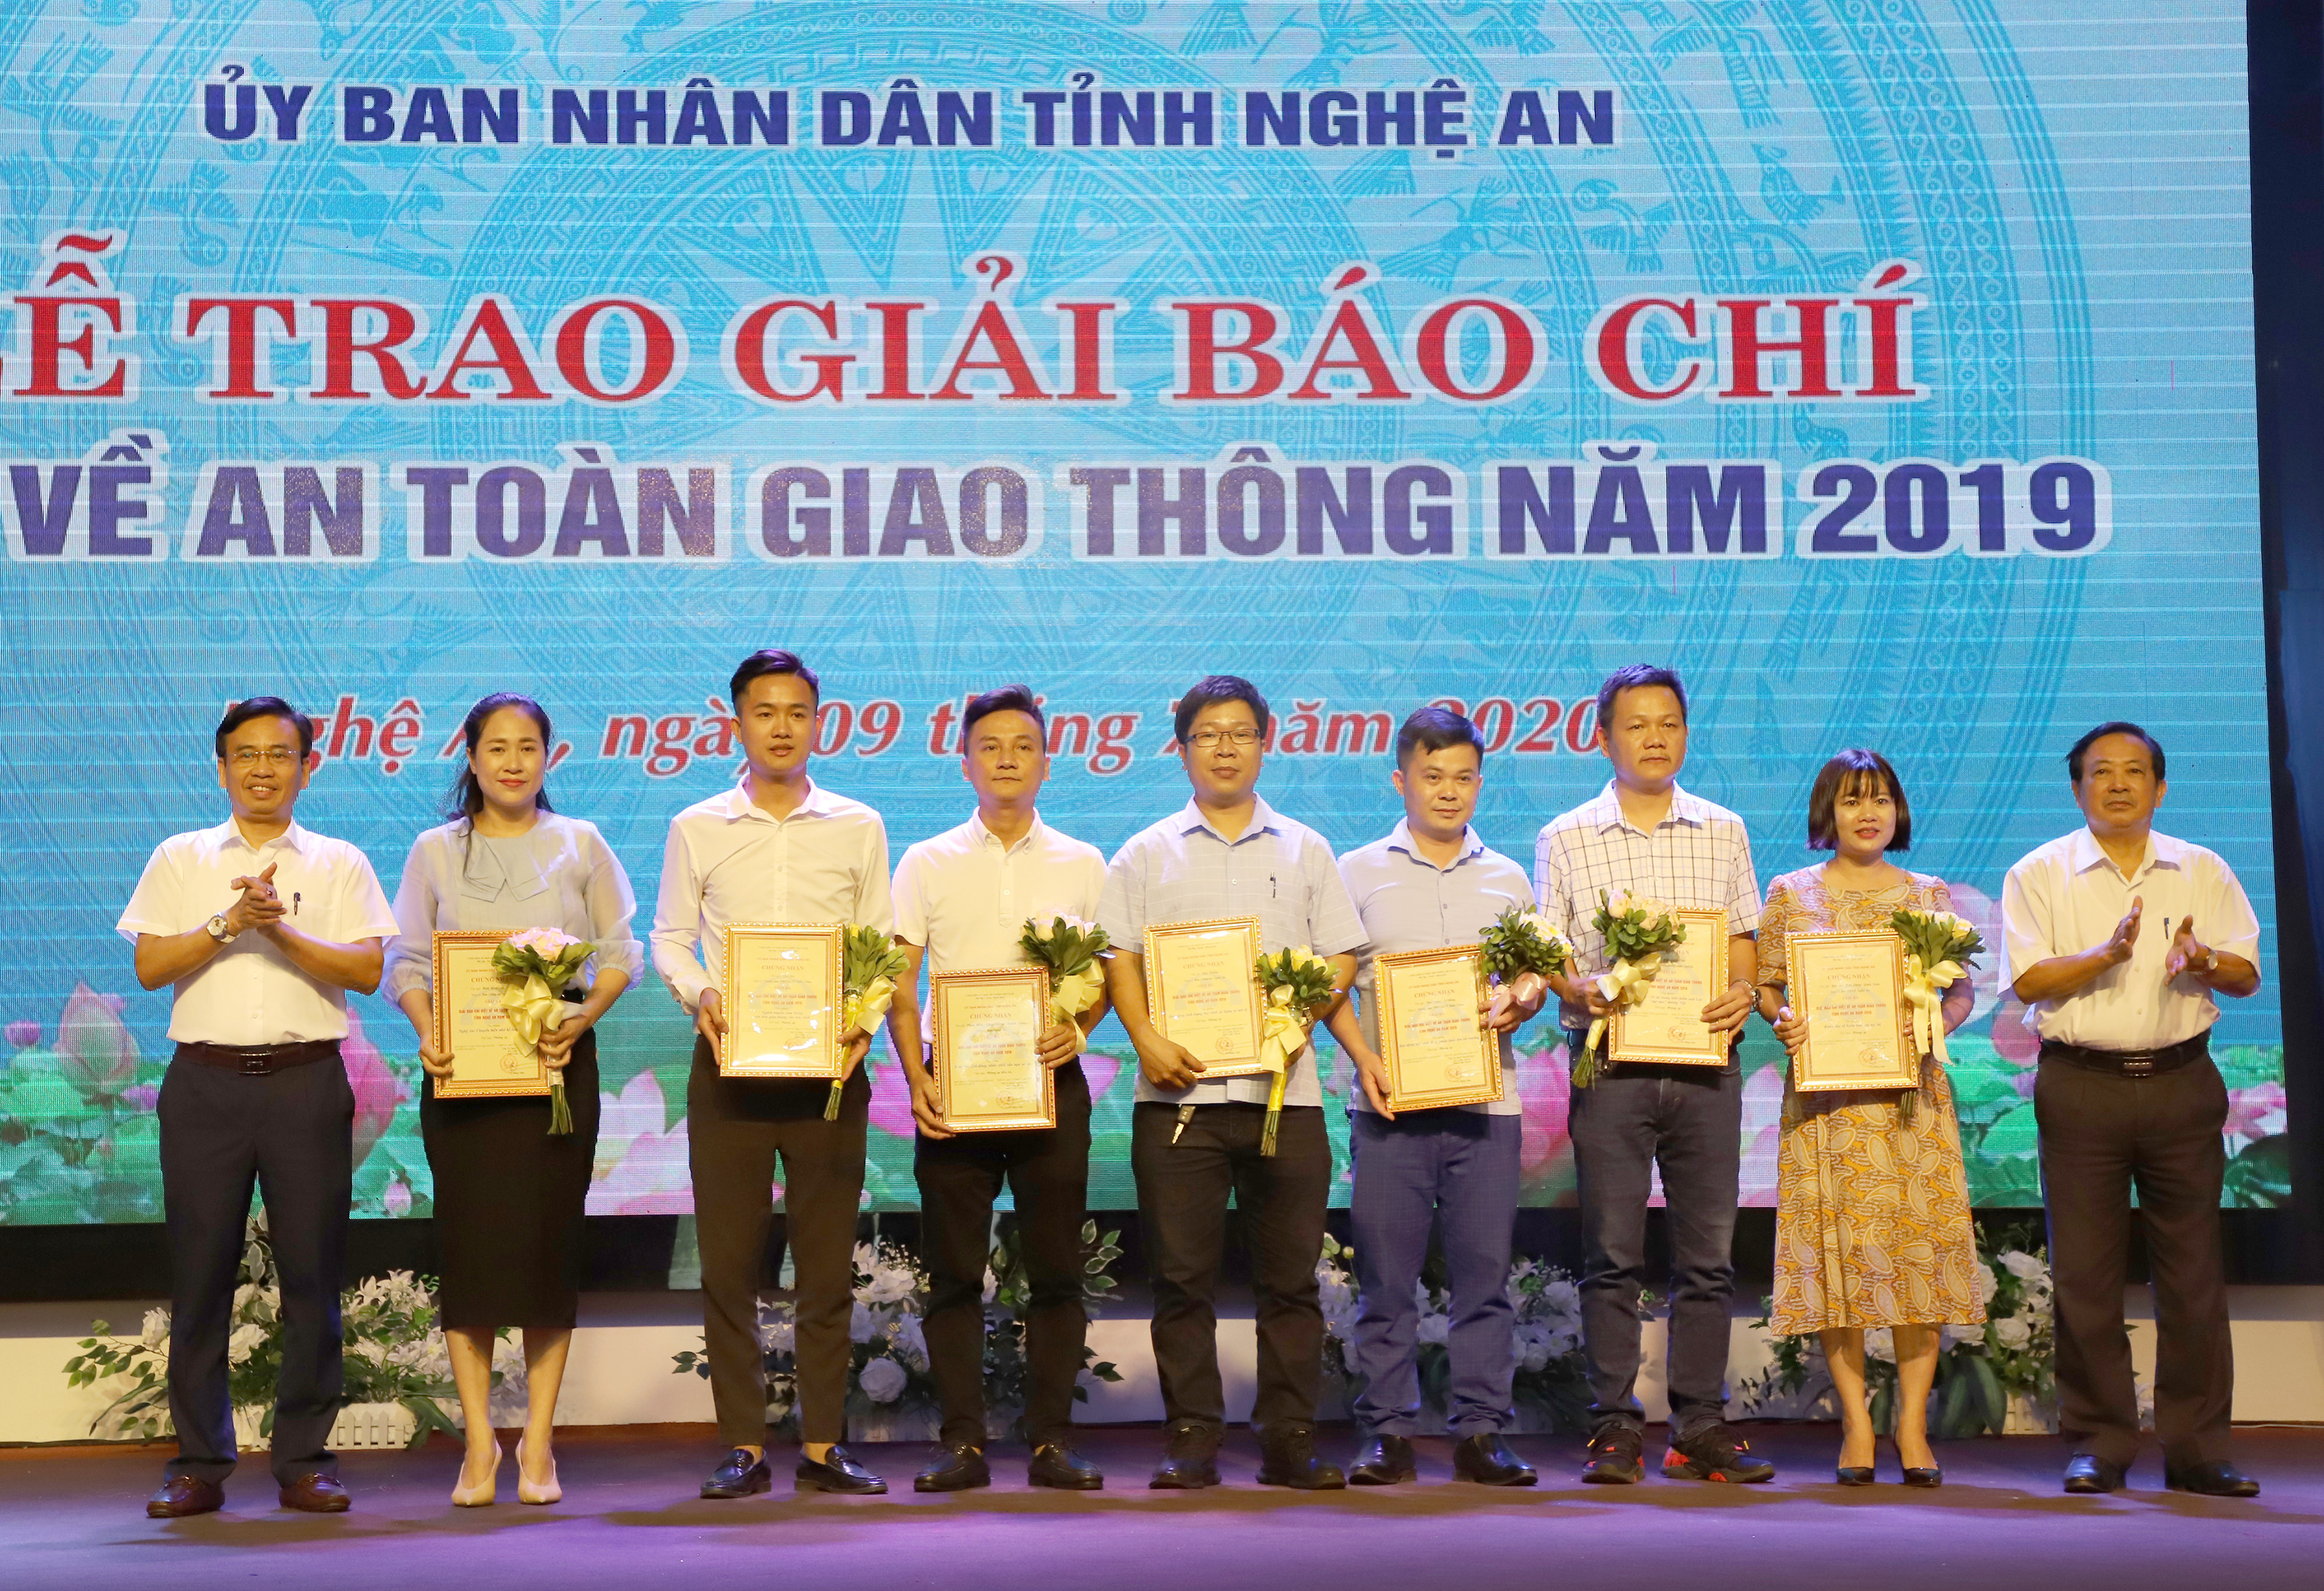 Báo chí viết về ATGT tỉnh Nghệ An năm 2019. Ảnh: Phạm Bằng